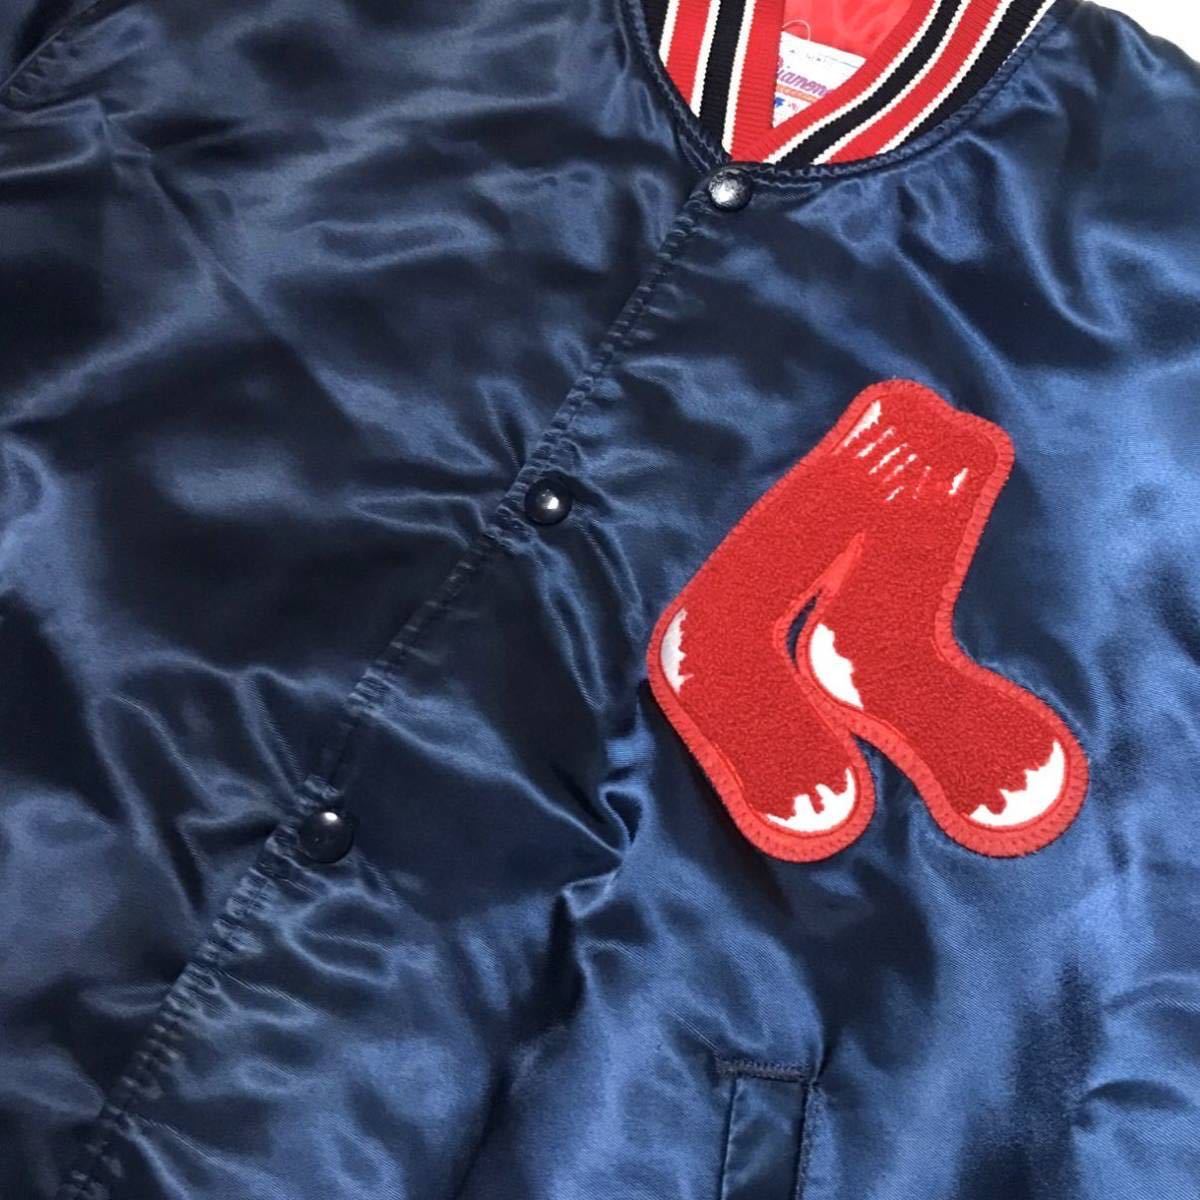 [USA производства ]90s STARTER стартер MLB красный носки Stadium жакет USA производства мужской L темно-синий Vintage нейлон куртка редкость 